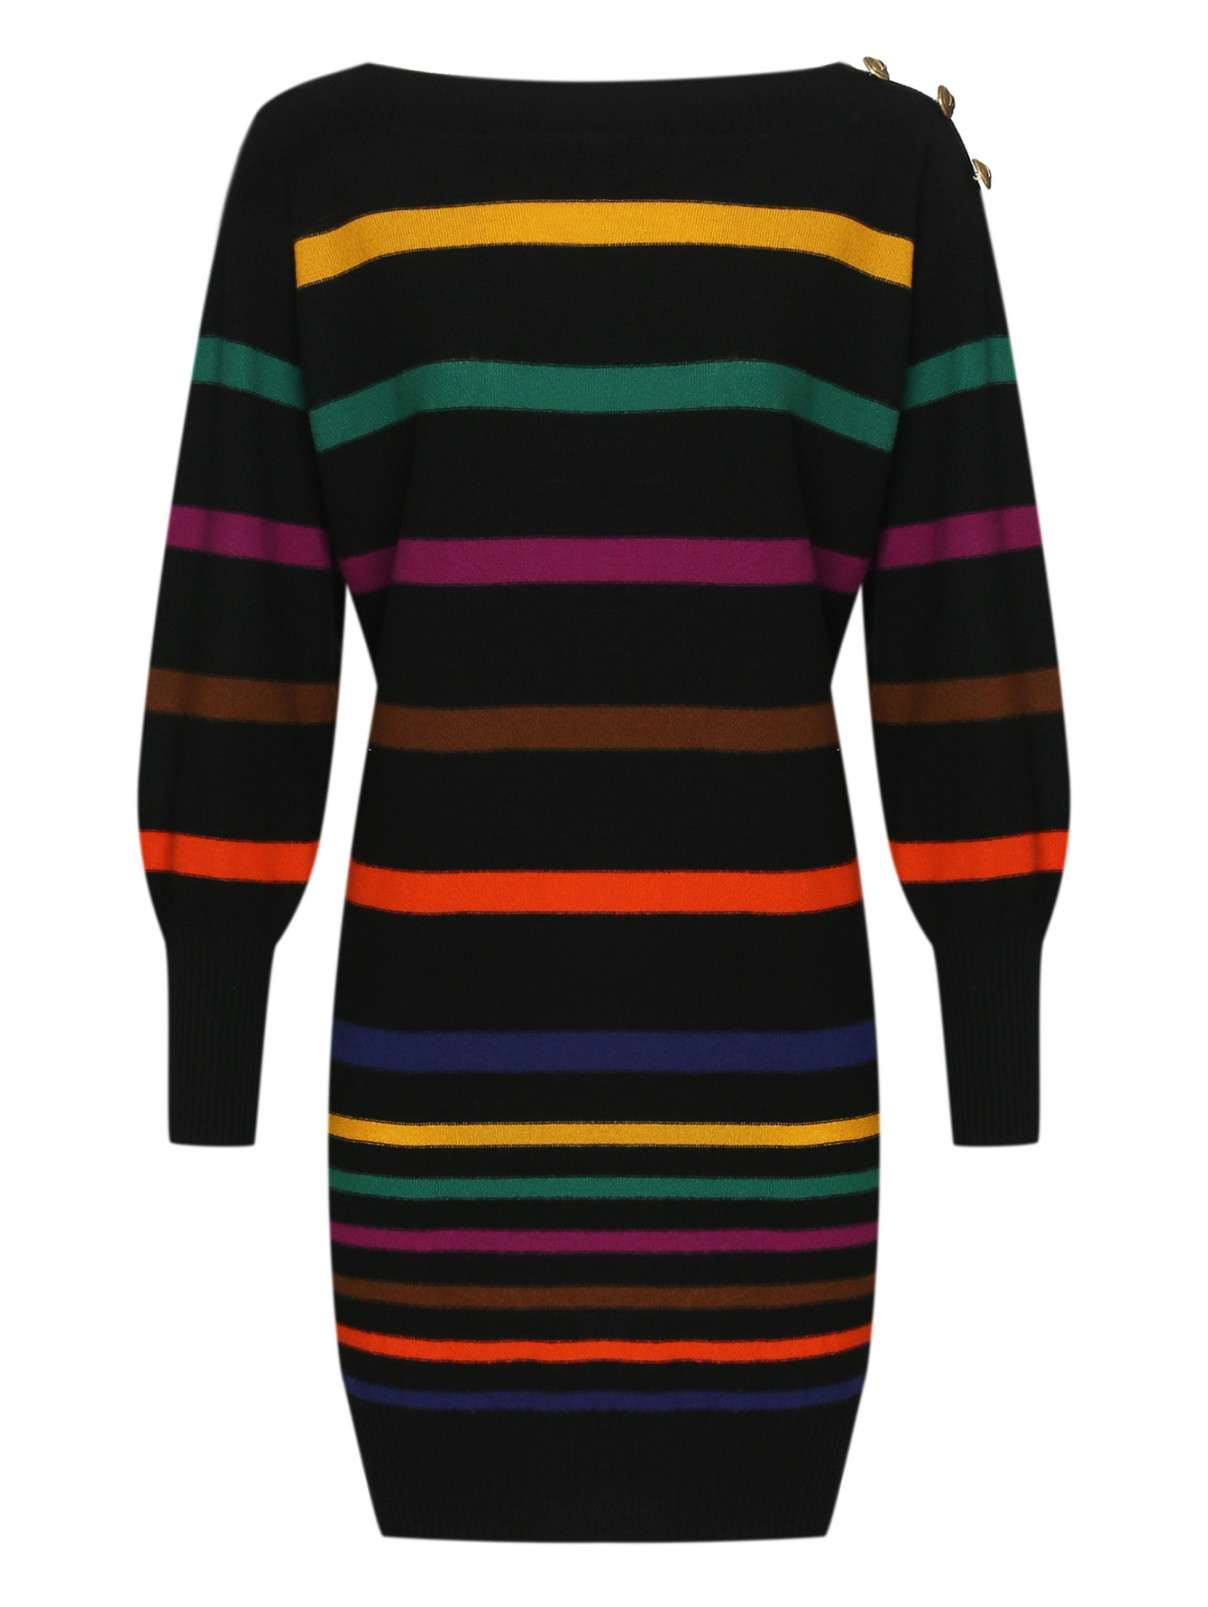 Трикотажное платье с узором полоска Luisa Spagnoli  –  Общий вид  – Цвет:  Мультиколор